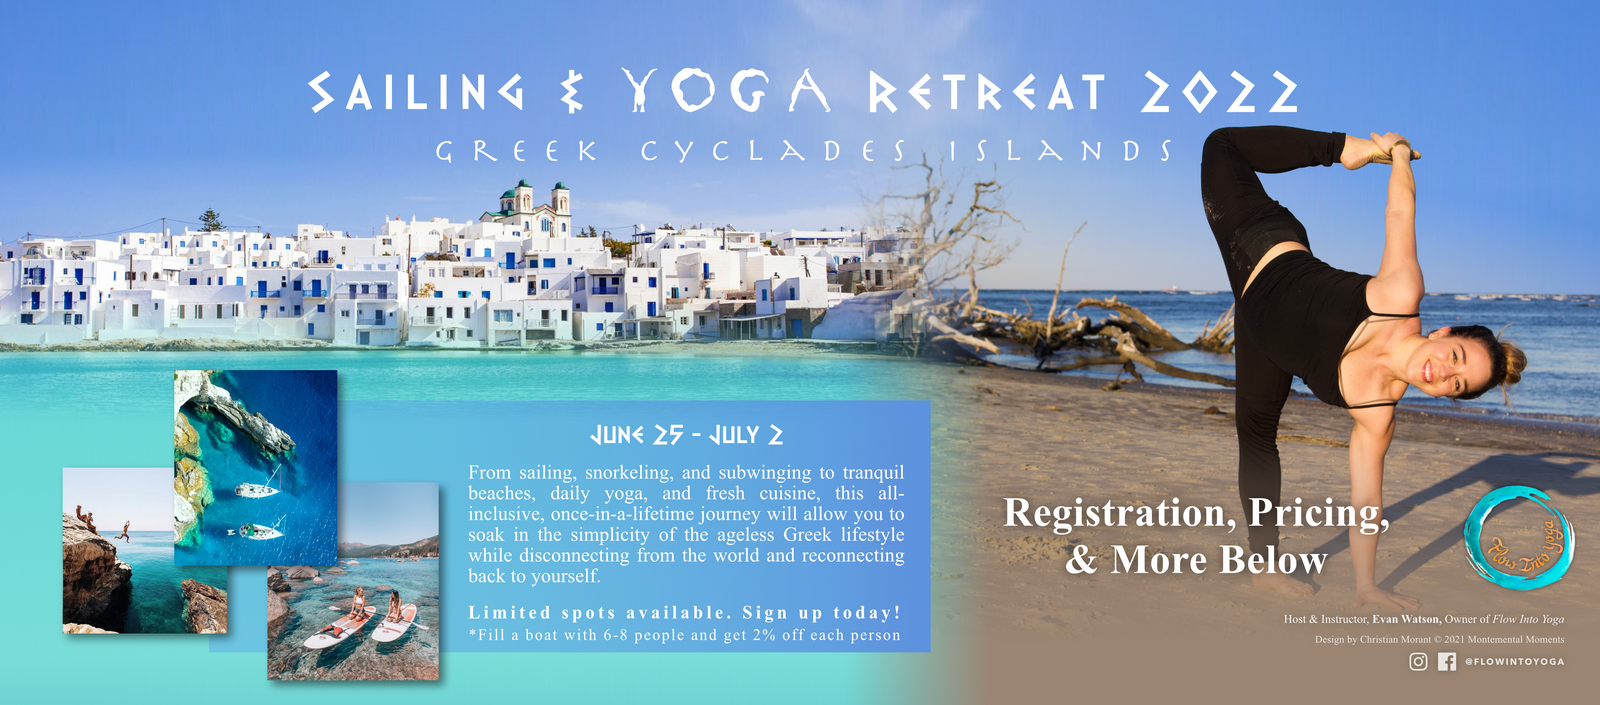 Sailing & Yoga Retreat 2022: Greek Cyclades Islands